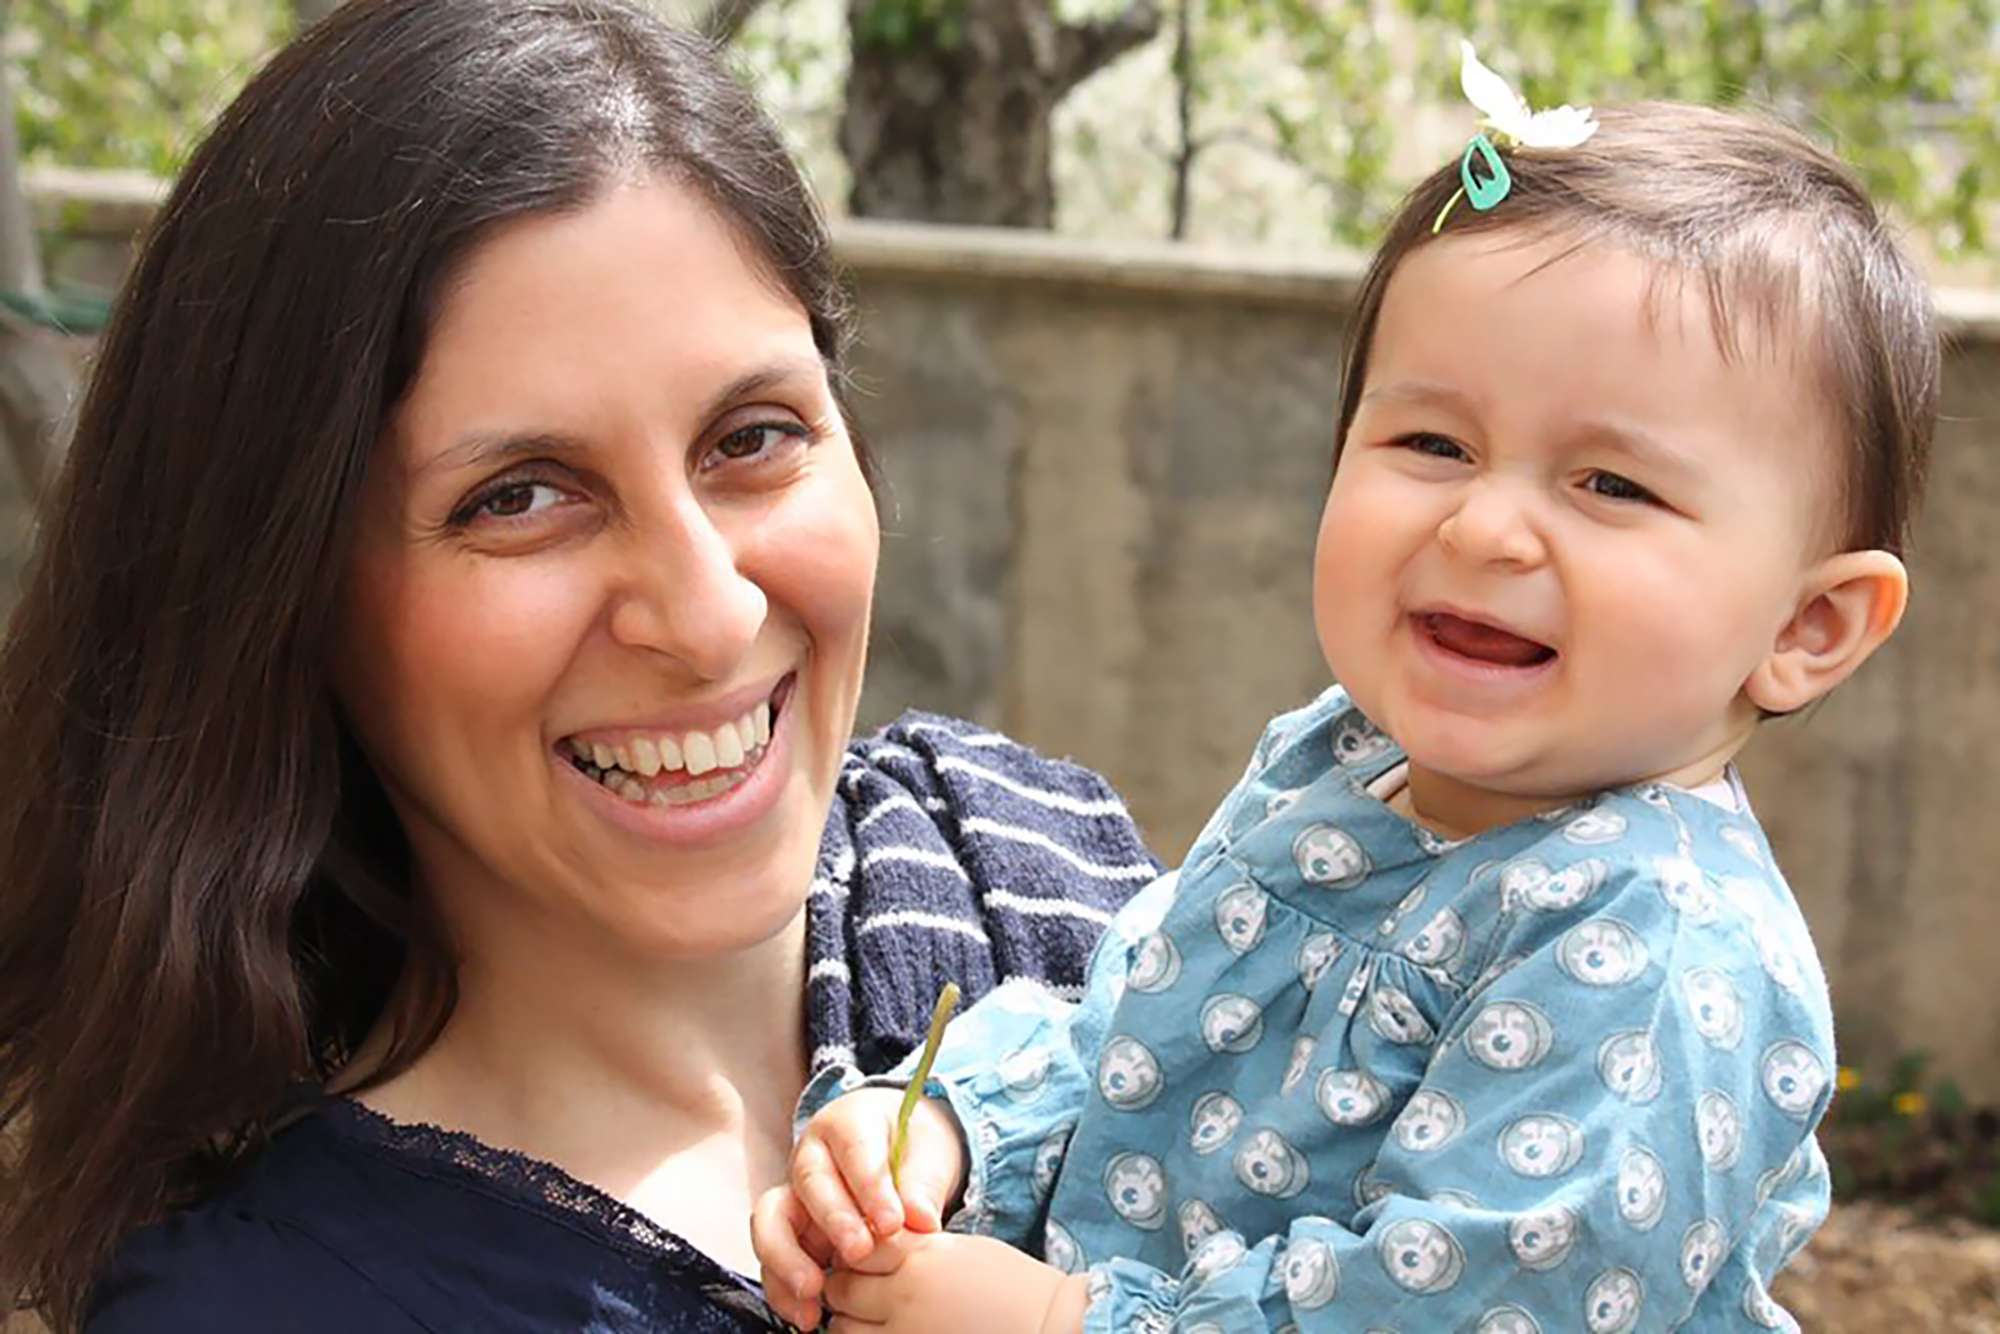 زاغري راتكليف خاضعة للإقامة الجبرية لدى والديها في طهران مع سوار الكتروني